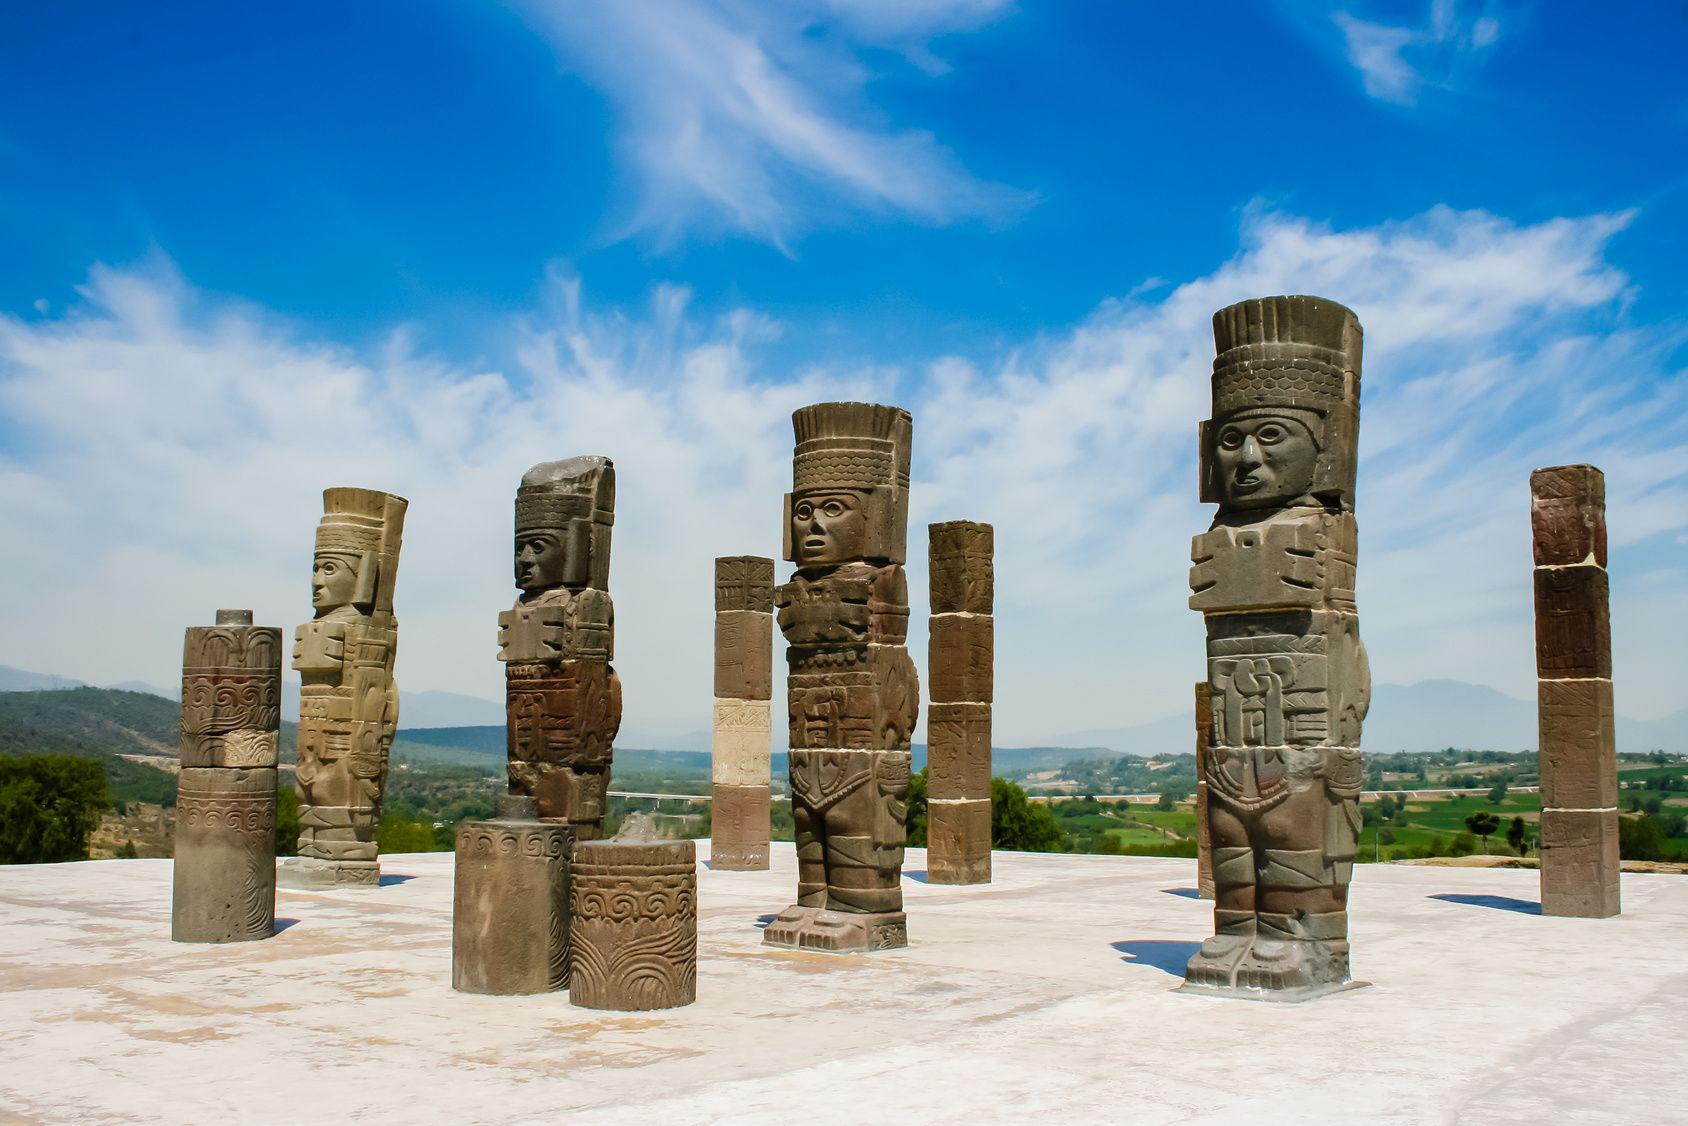 Messico – Scopri le vestigia dell’antica civiltà Maya. Siti archeologici, spiagge bianchissime e tanto divertimento in questa terra piena di storia e bellezza. niciak - Fotolia